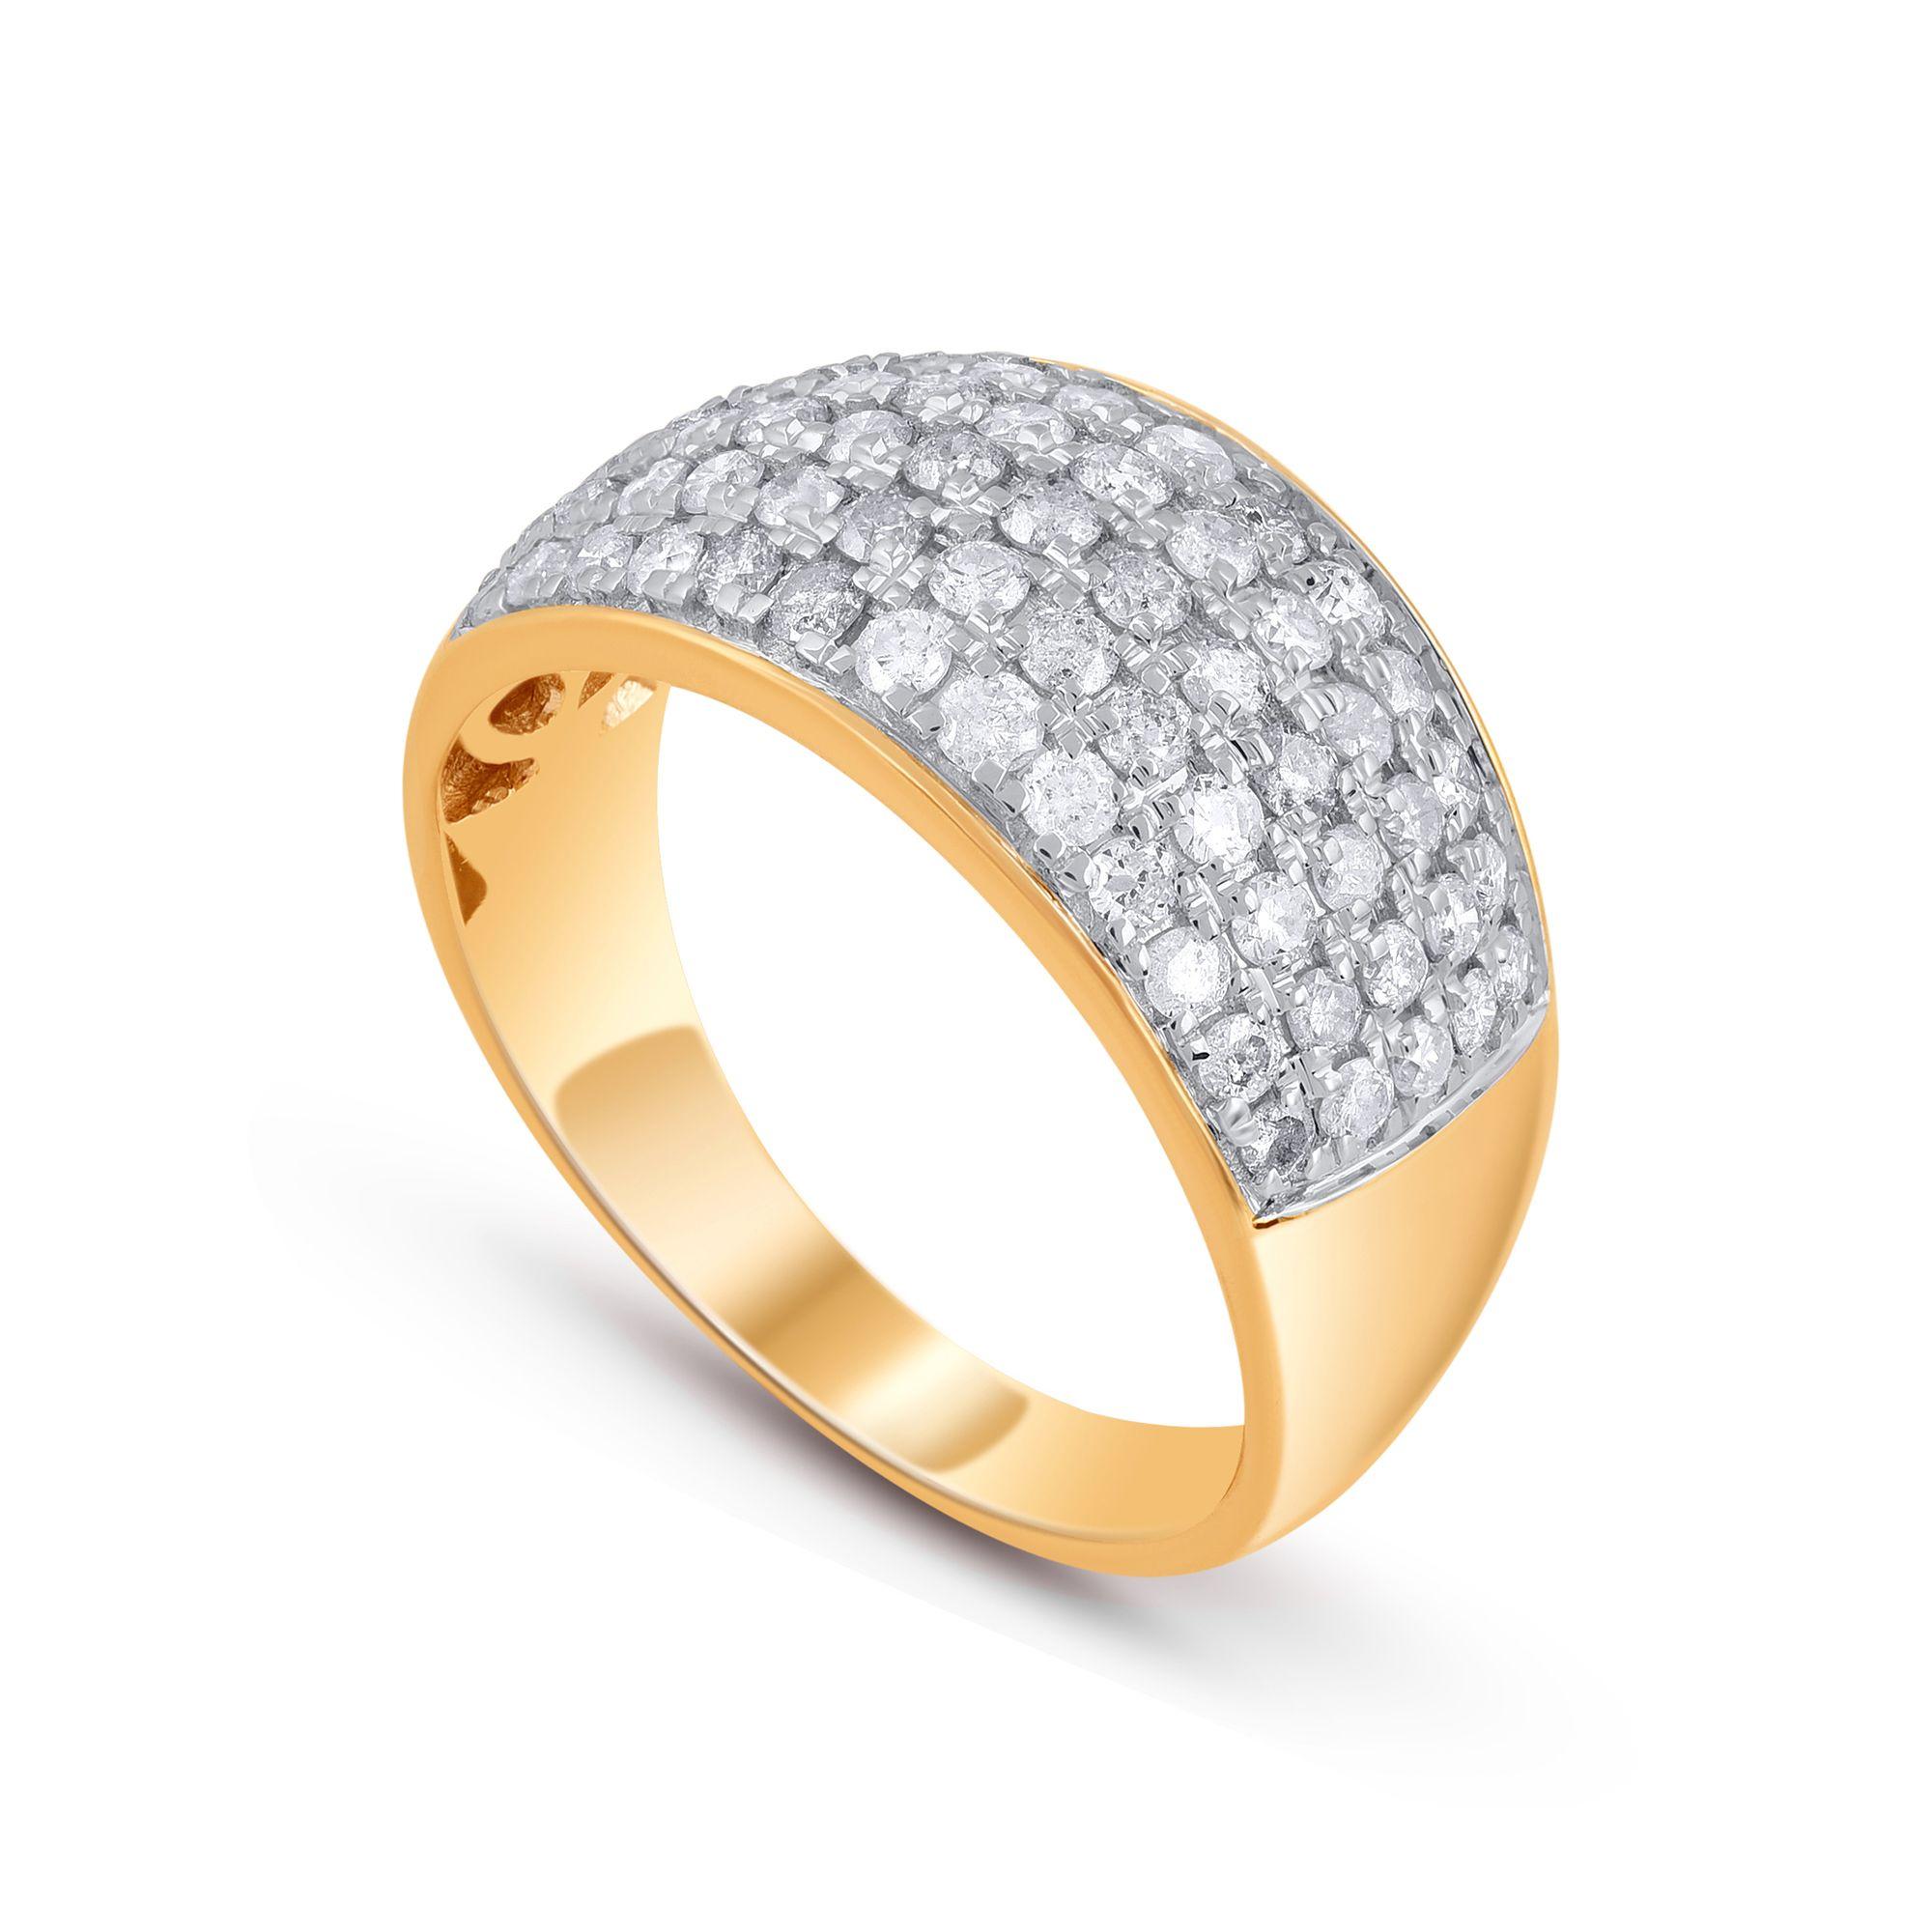 Dieses mehrreihige, stilvolle Brautband ist mit 65 Diamanten in Zackenfassung besetzt und glänzt. Fachmännisch aus 10-karätigem Gelbgold gefertigt. Die Diamanten sind mit der Farbe G-H und der Reinheit I2-I3 bewertet. 

Ringgröße und Metallfarbe